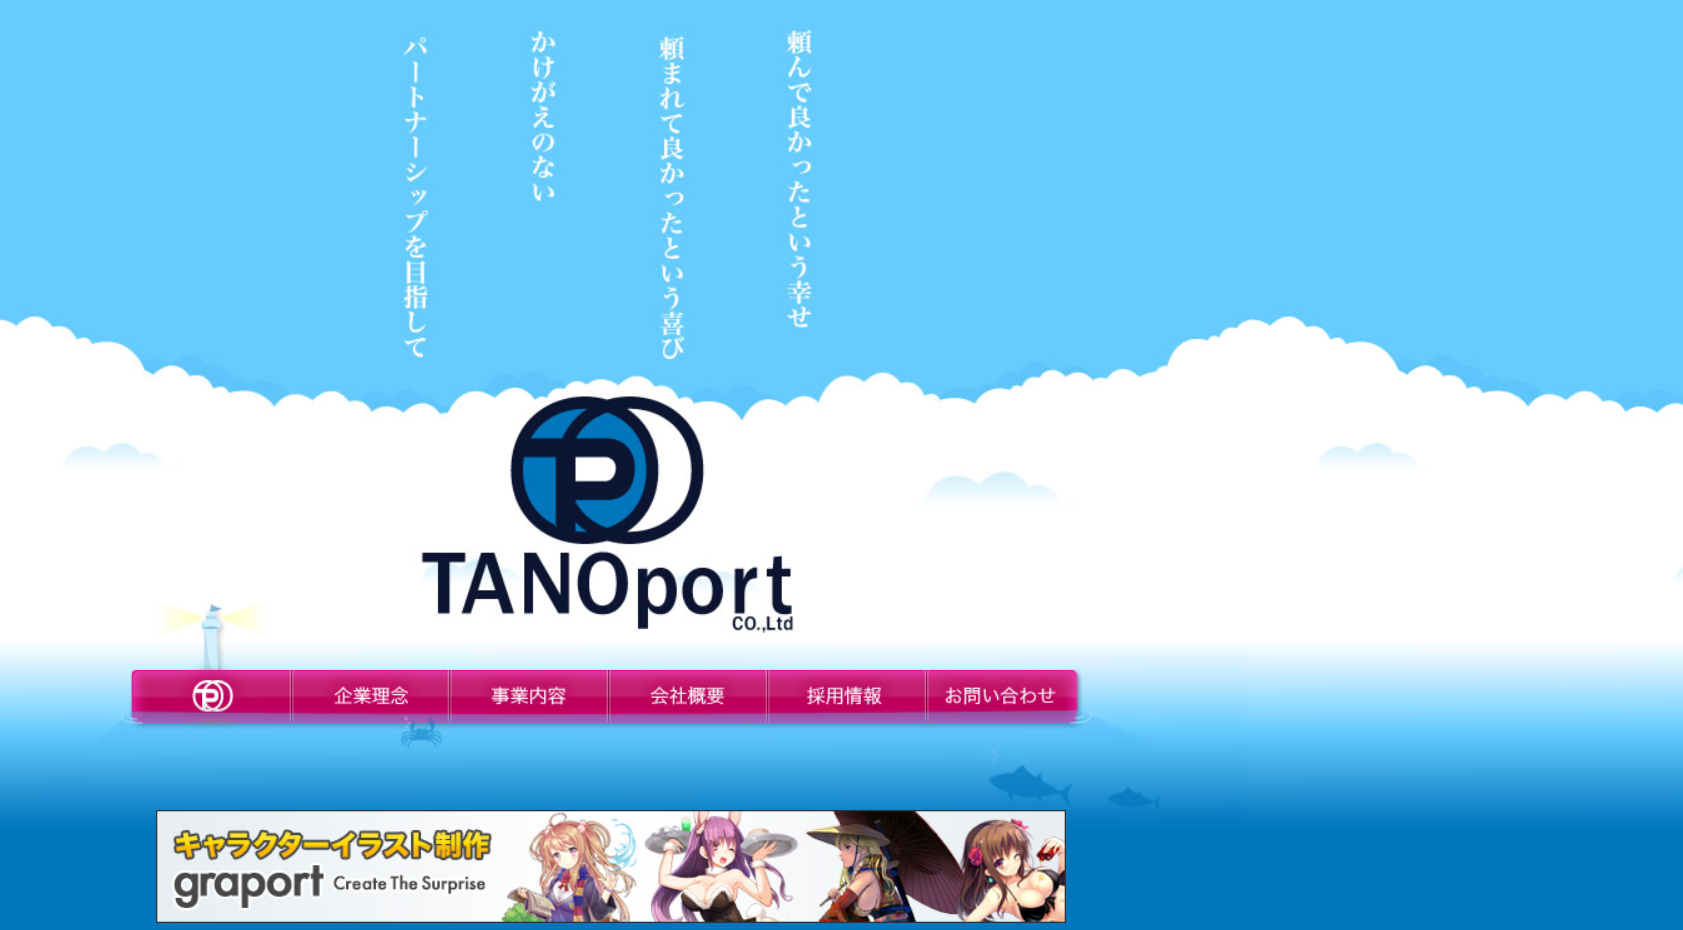 株式会社 TANOportの株式会社 TANOportサービス